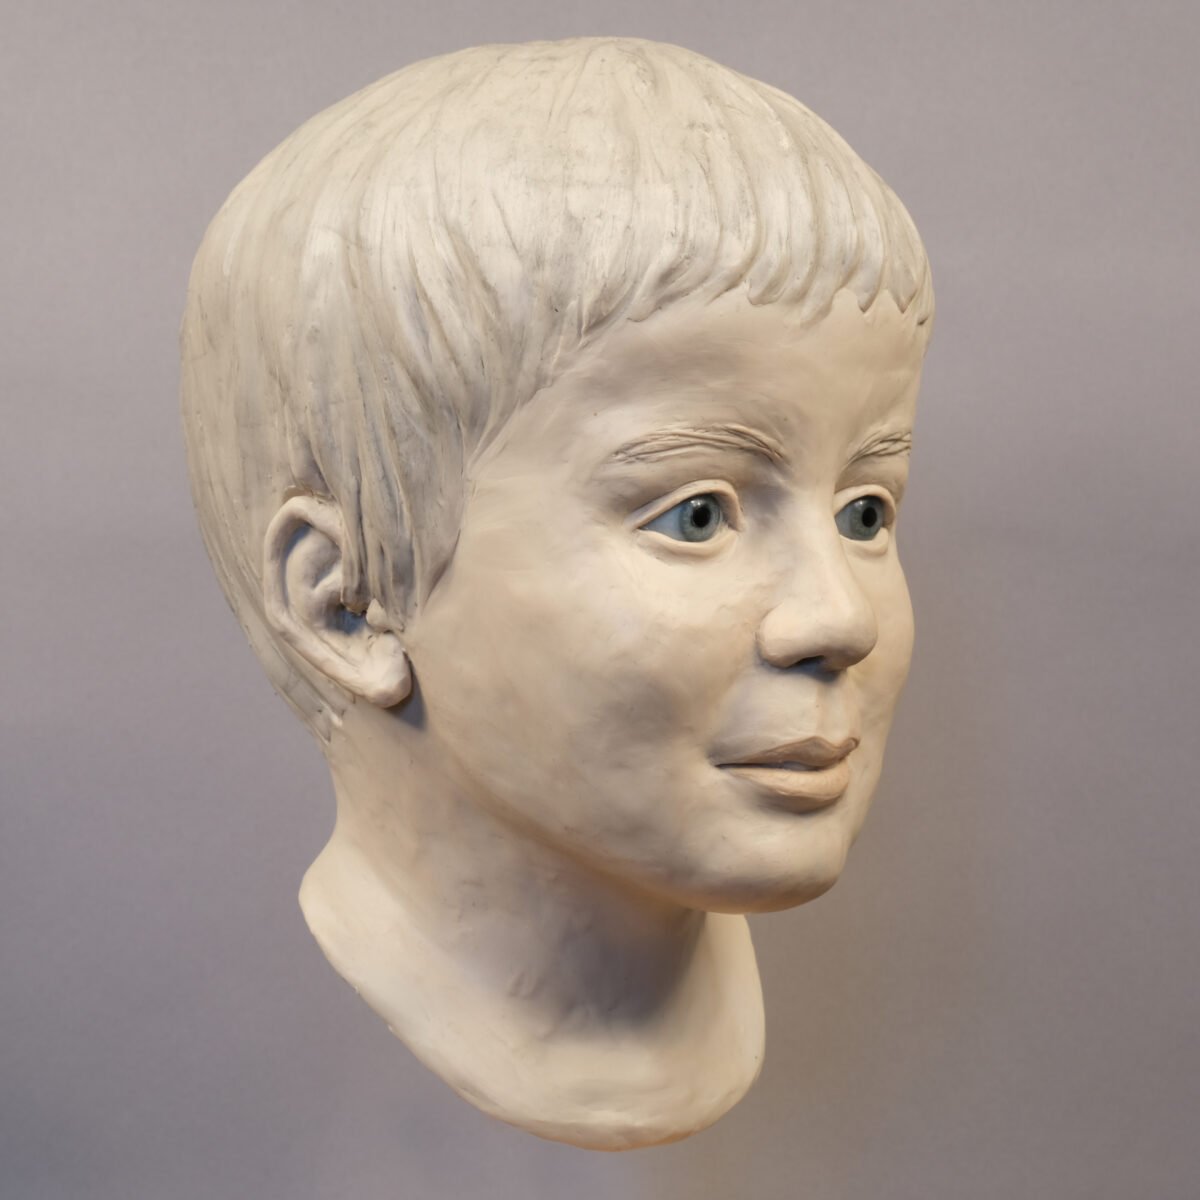 Die Im Rahmen einer rechtsmedizinischen Gesichtsrekonstruktion erstellte Skulptur des toten Jungen. Foto: Polizei